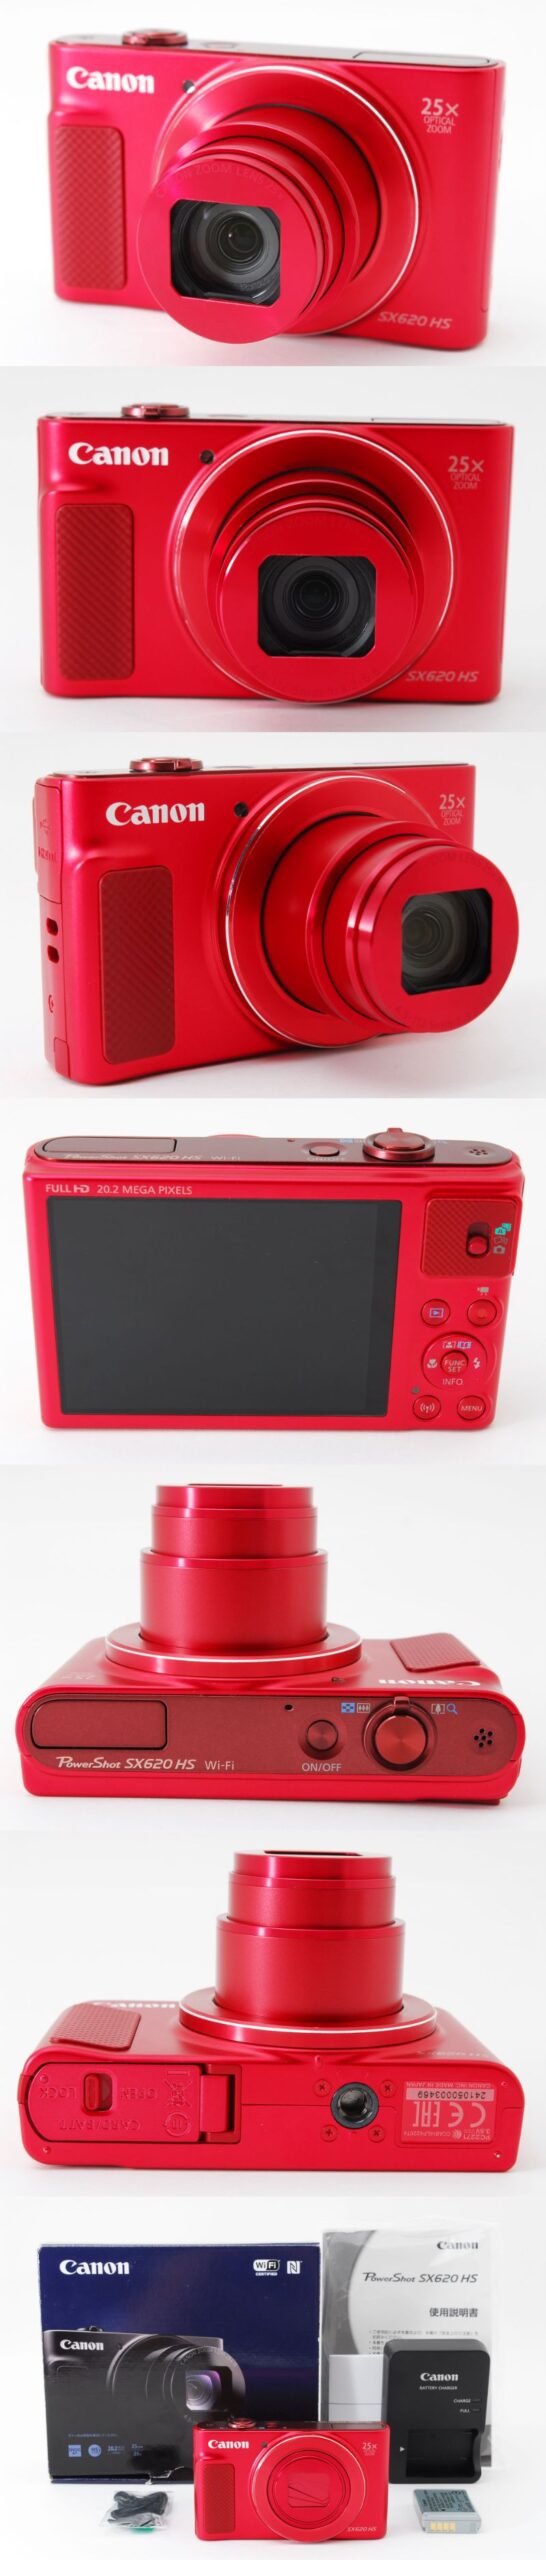 高級品 Canon キャノン PowerShot SX620 HS pantum.rs